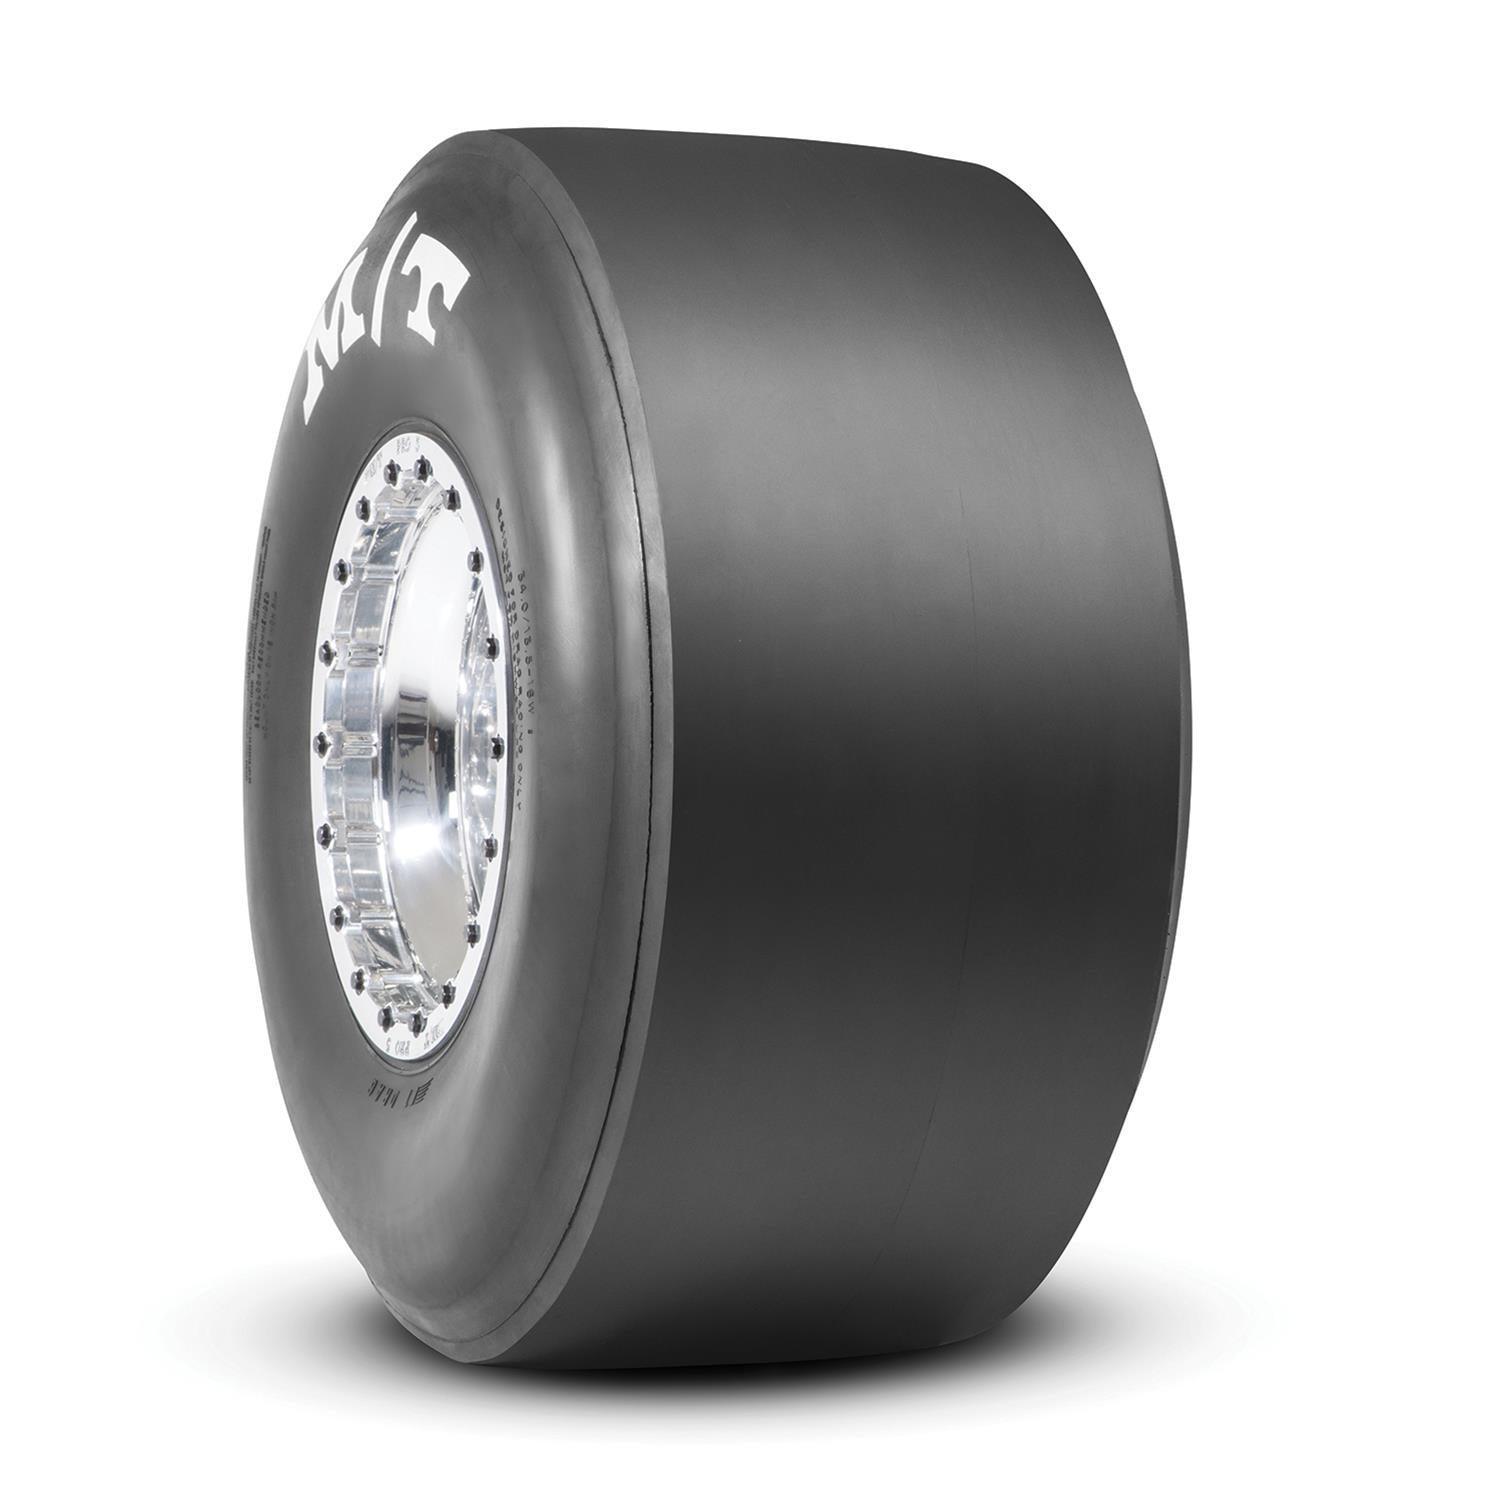 32.0/14.0-15 ET Drag Tire - Burlile Performance Products